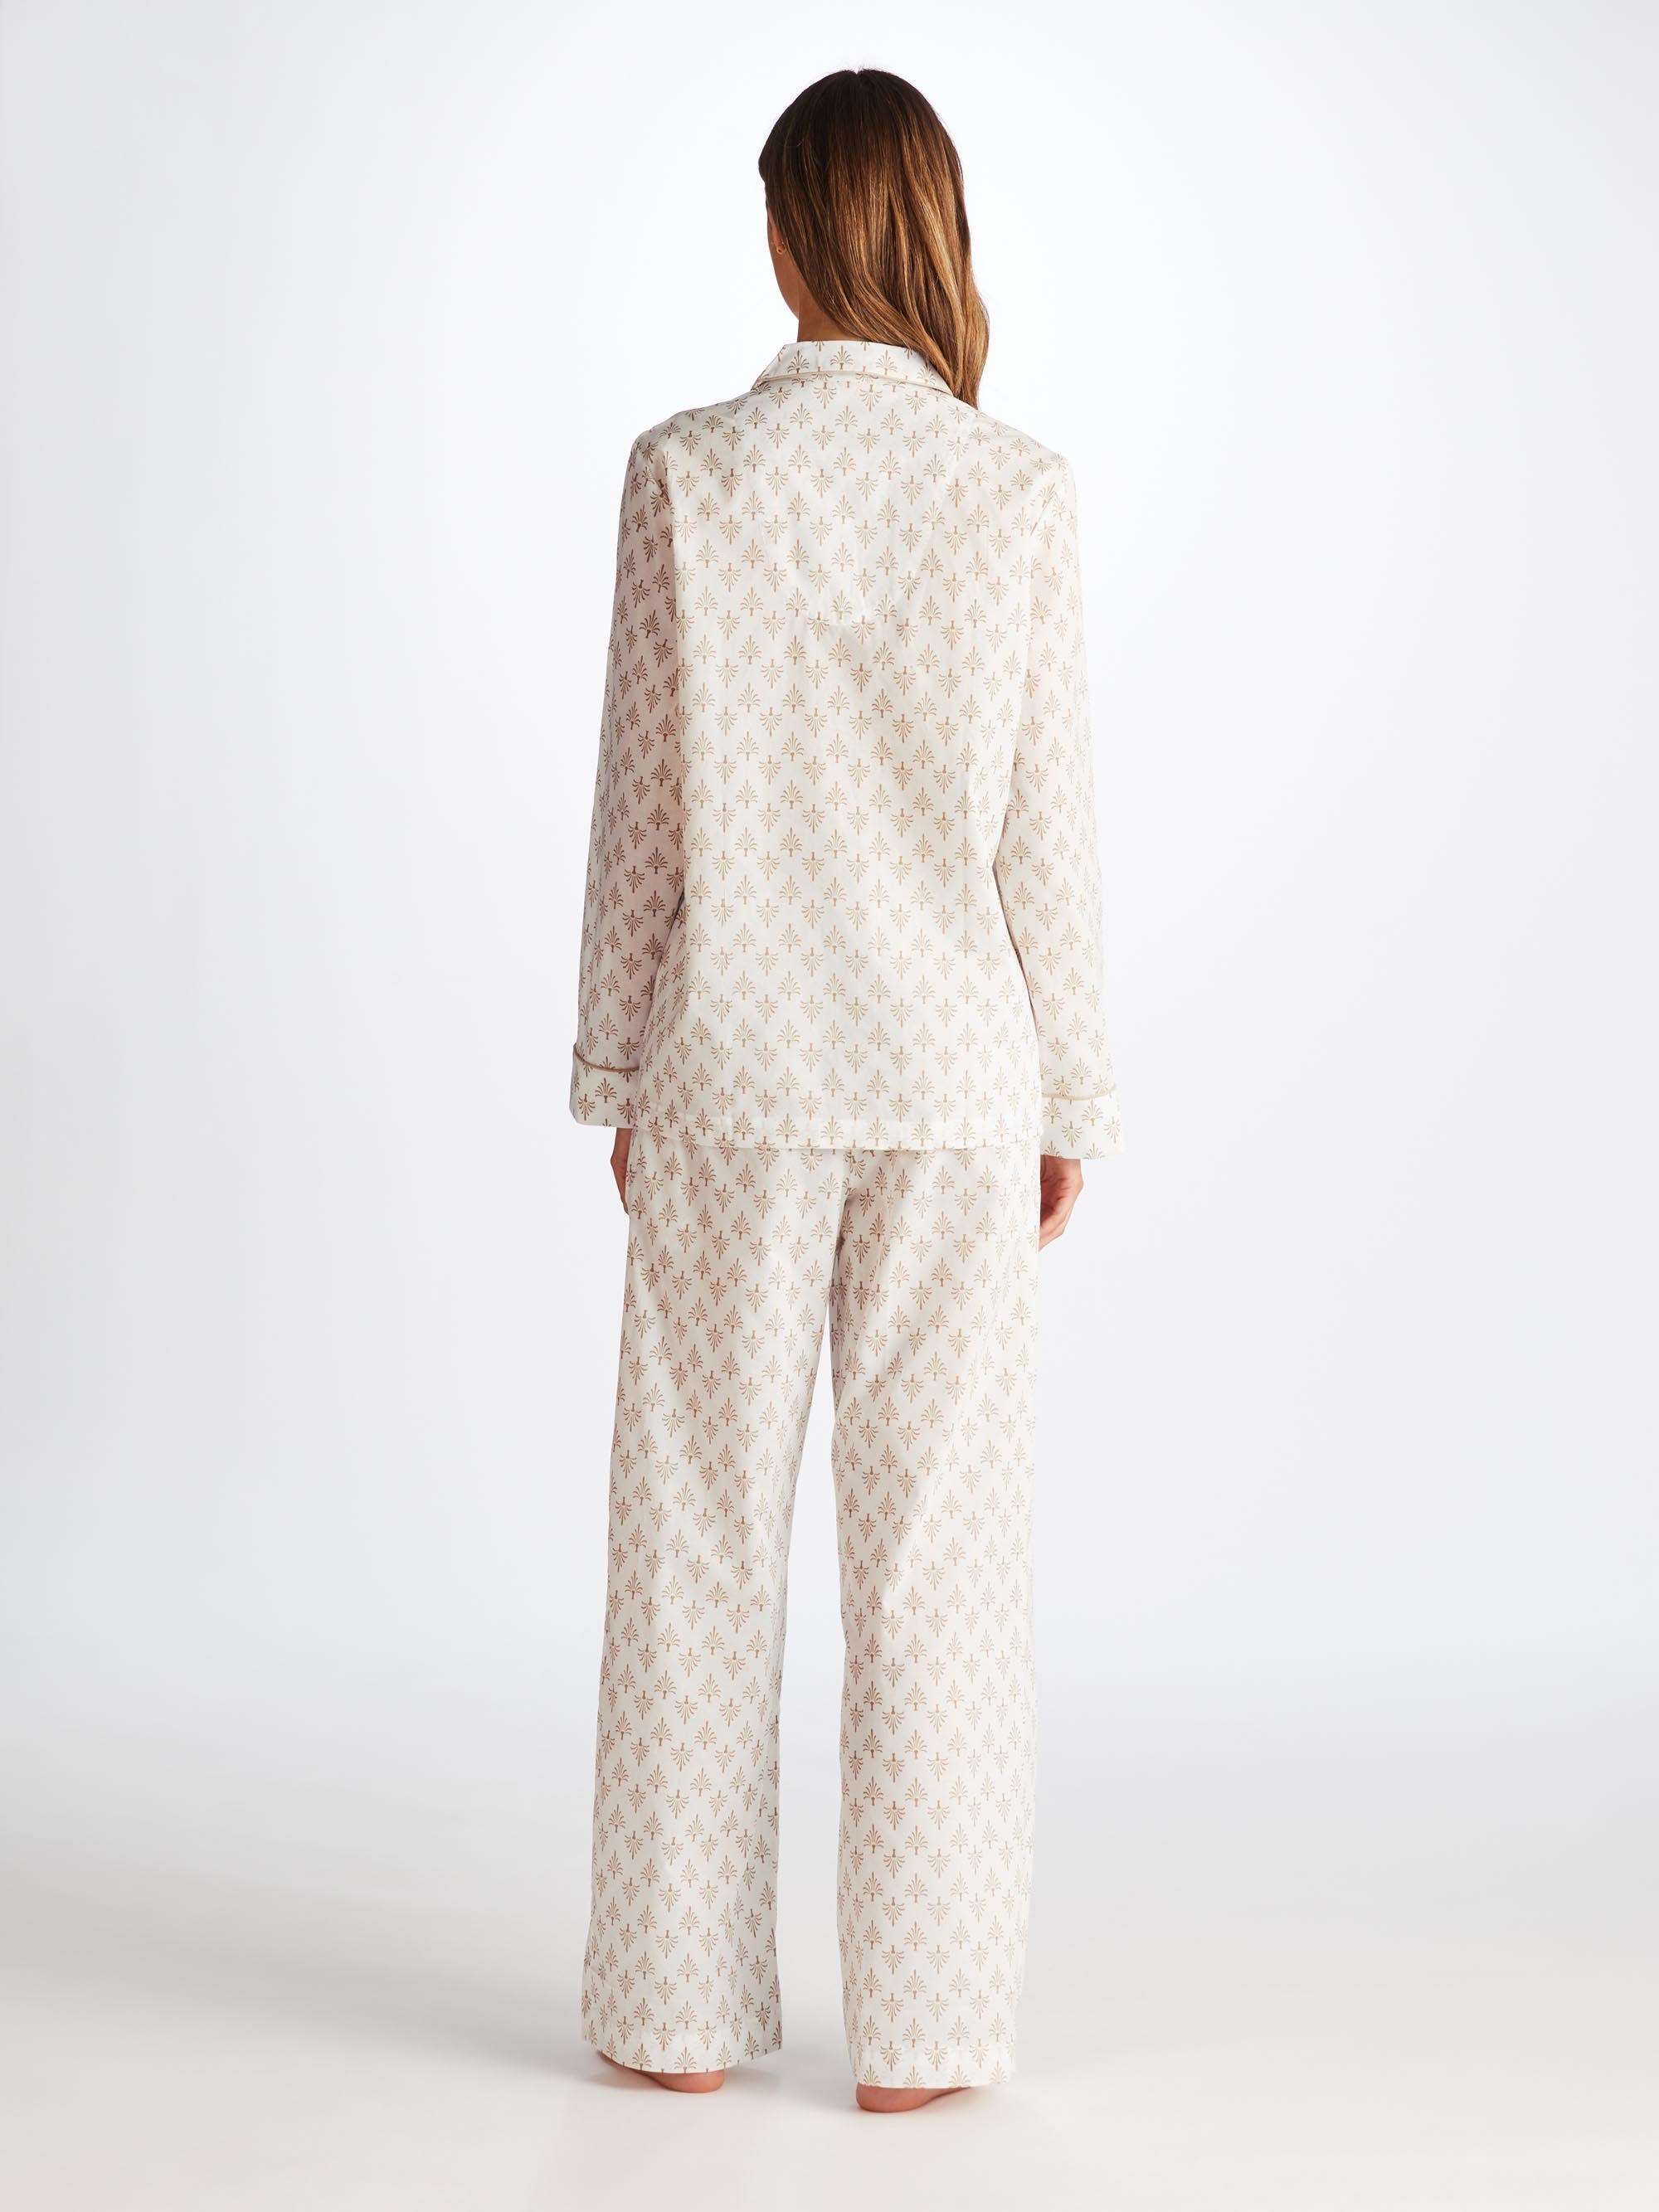 Women's Pyjamas Nelson 101 Cotton Batiste White